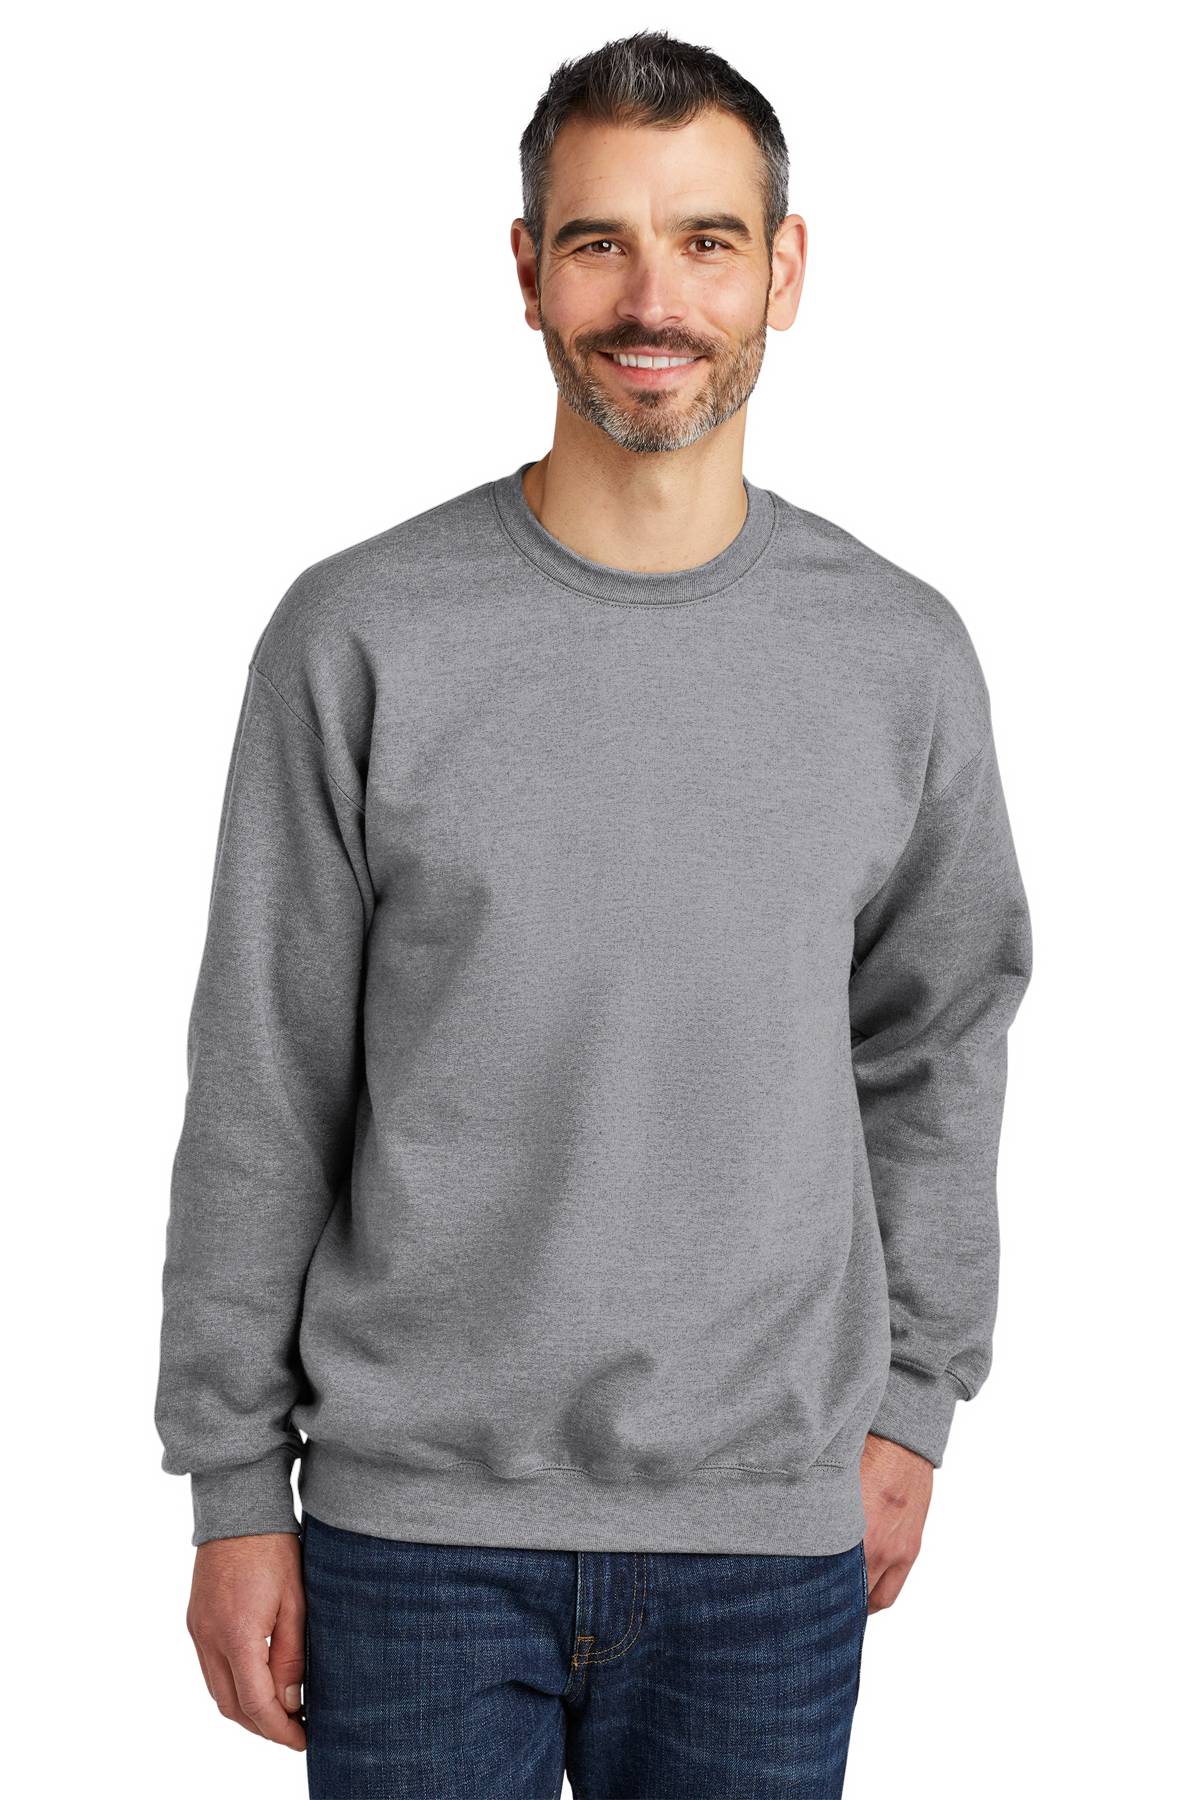 Gildan Softstyle Crewneck Sweatshirt, Product